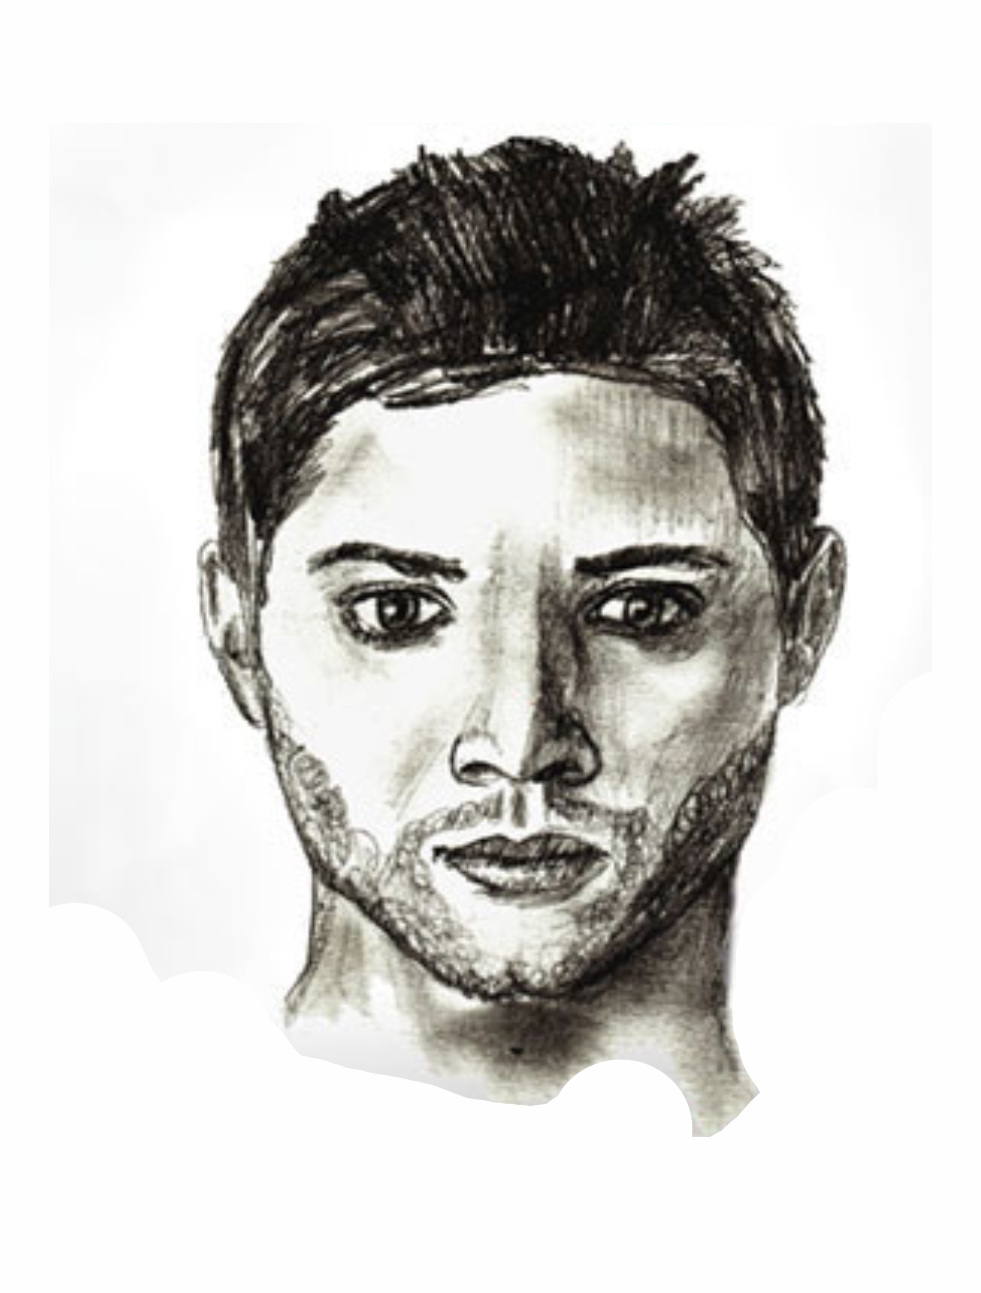 Урок рисования: Как нарисовать лицо человека поэтапно карандашом. 6 этап